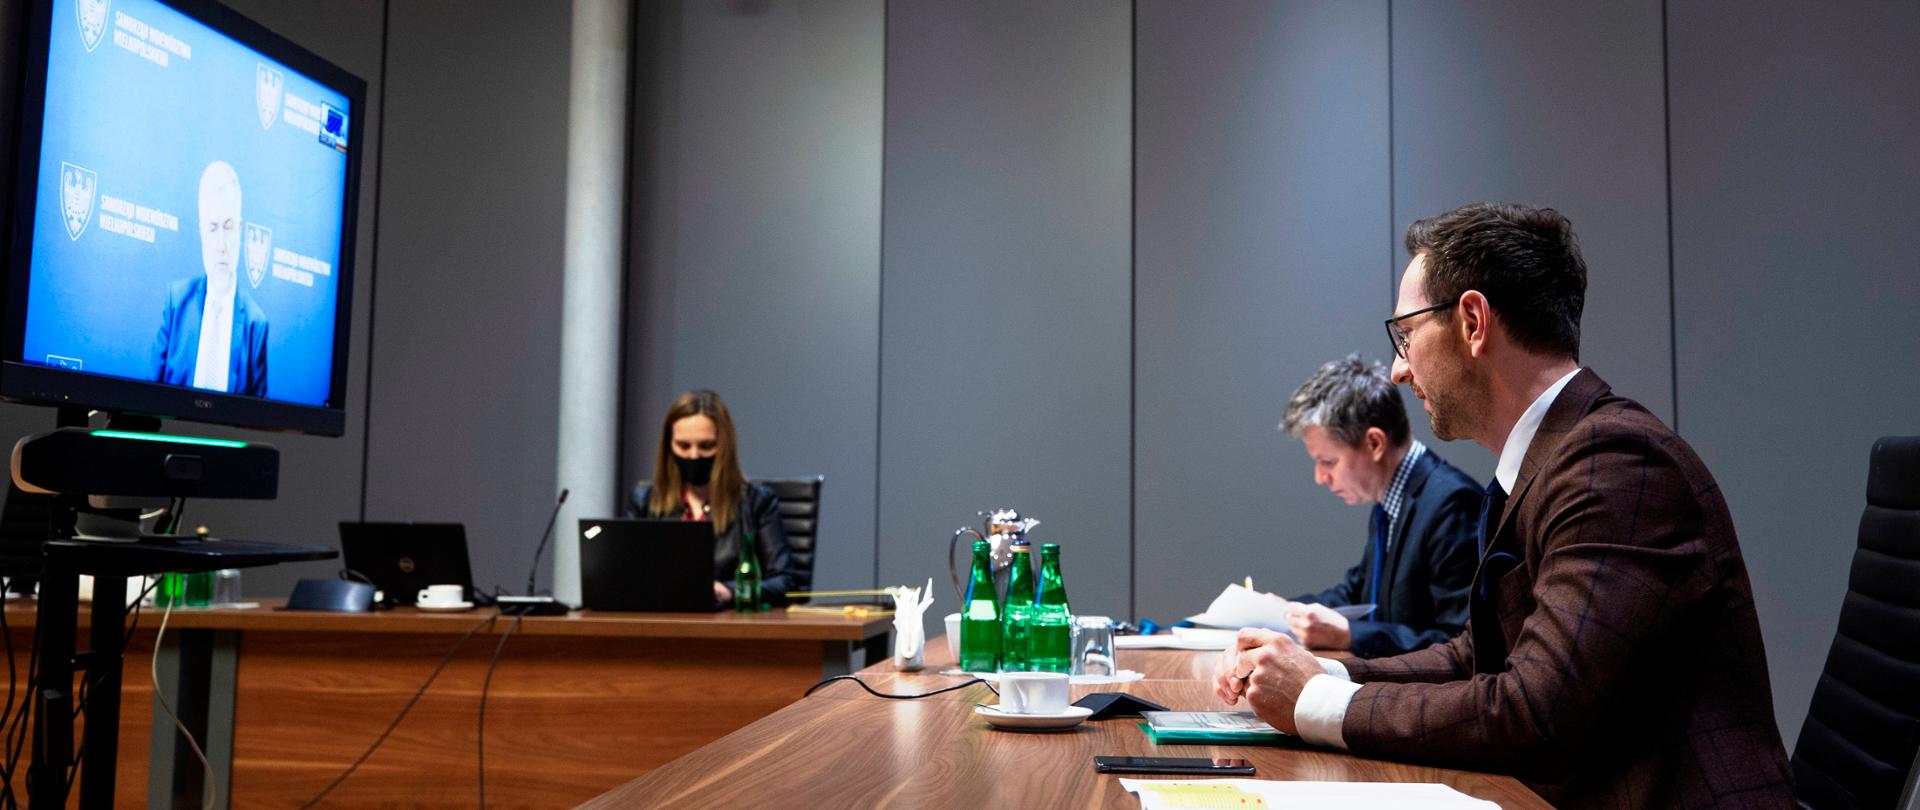 Na sali prze stołach siedzi dwóch mężczyzn i kobieta. Przed nimi ekran. Trwa zdalne spotkanie. Na pierwszym planie wiceminister Waldemar Buda.